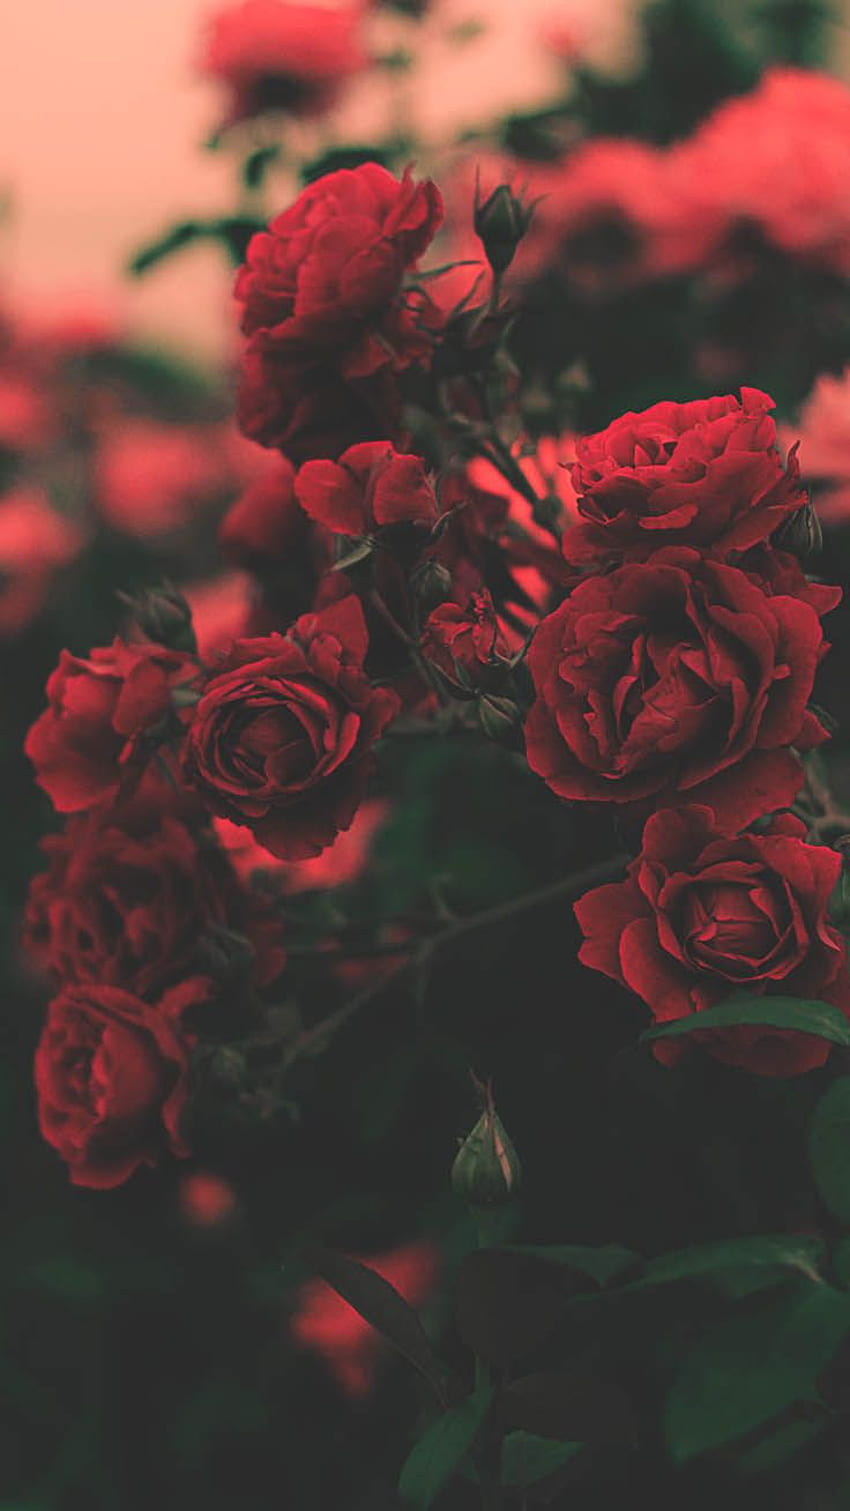 Hình nền hoa hồng đẹp đã sẵn sàng để dùng ngay cho điện thoại iPhone của bạn! Với những bông hoa hồng đỏ rực rỡ, tình cảm và sang trọng, bức ảnh này sẽ tạo ra một cảm giác bình yên cho người sử dụng. Click ngay để tải về hình nền đẹp nhất hoành tráng cho màn hình điện thoại của bạn!